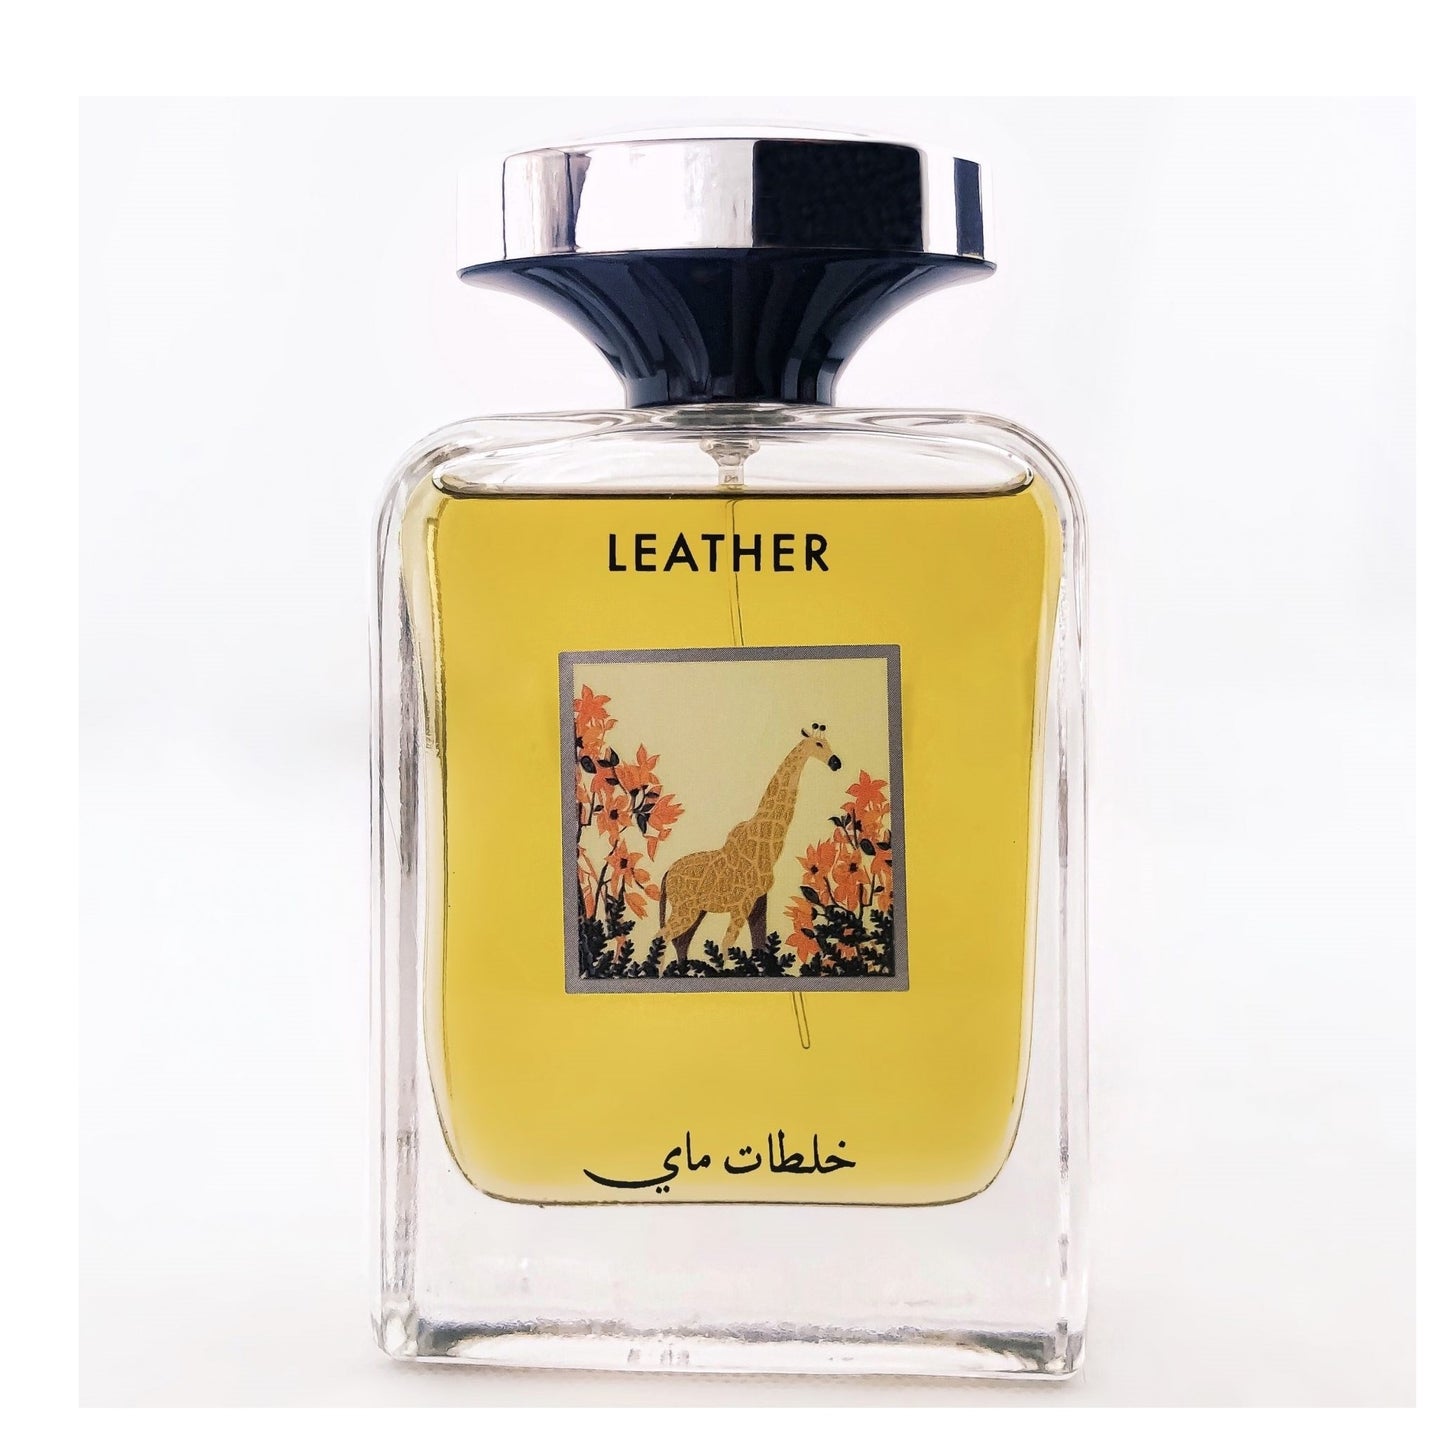 100 ml Woda Perfumowana Leather Sandałowy, ostro- piżmowy zapach dla mężczyzn